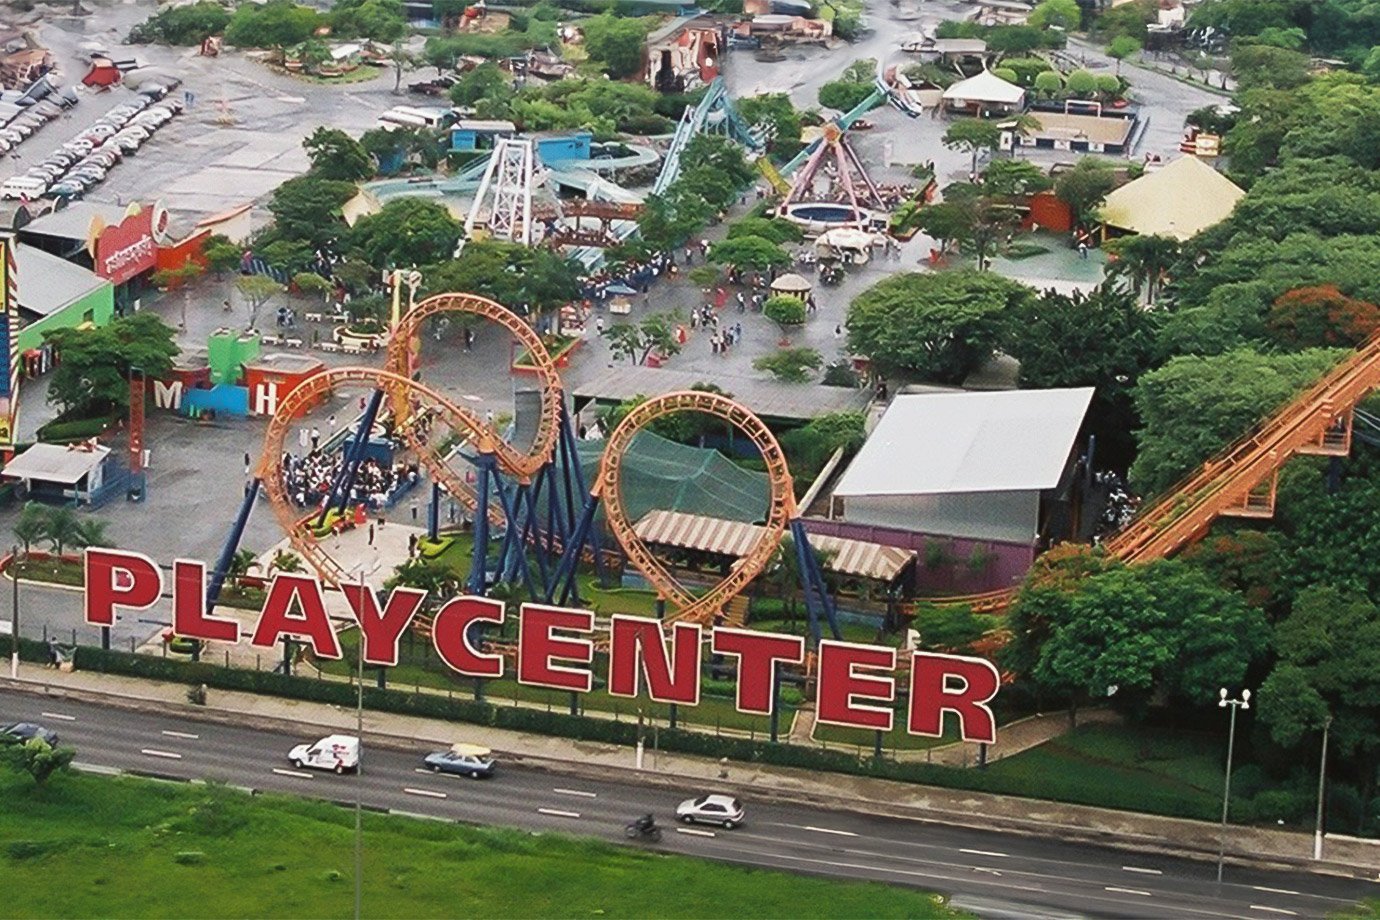 Vista aérea do Playcenter.